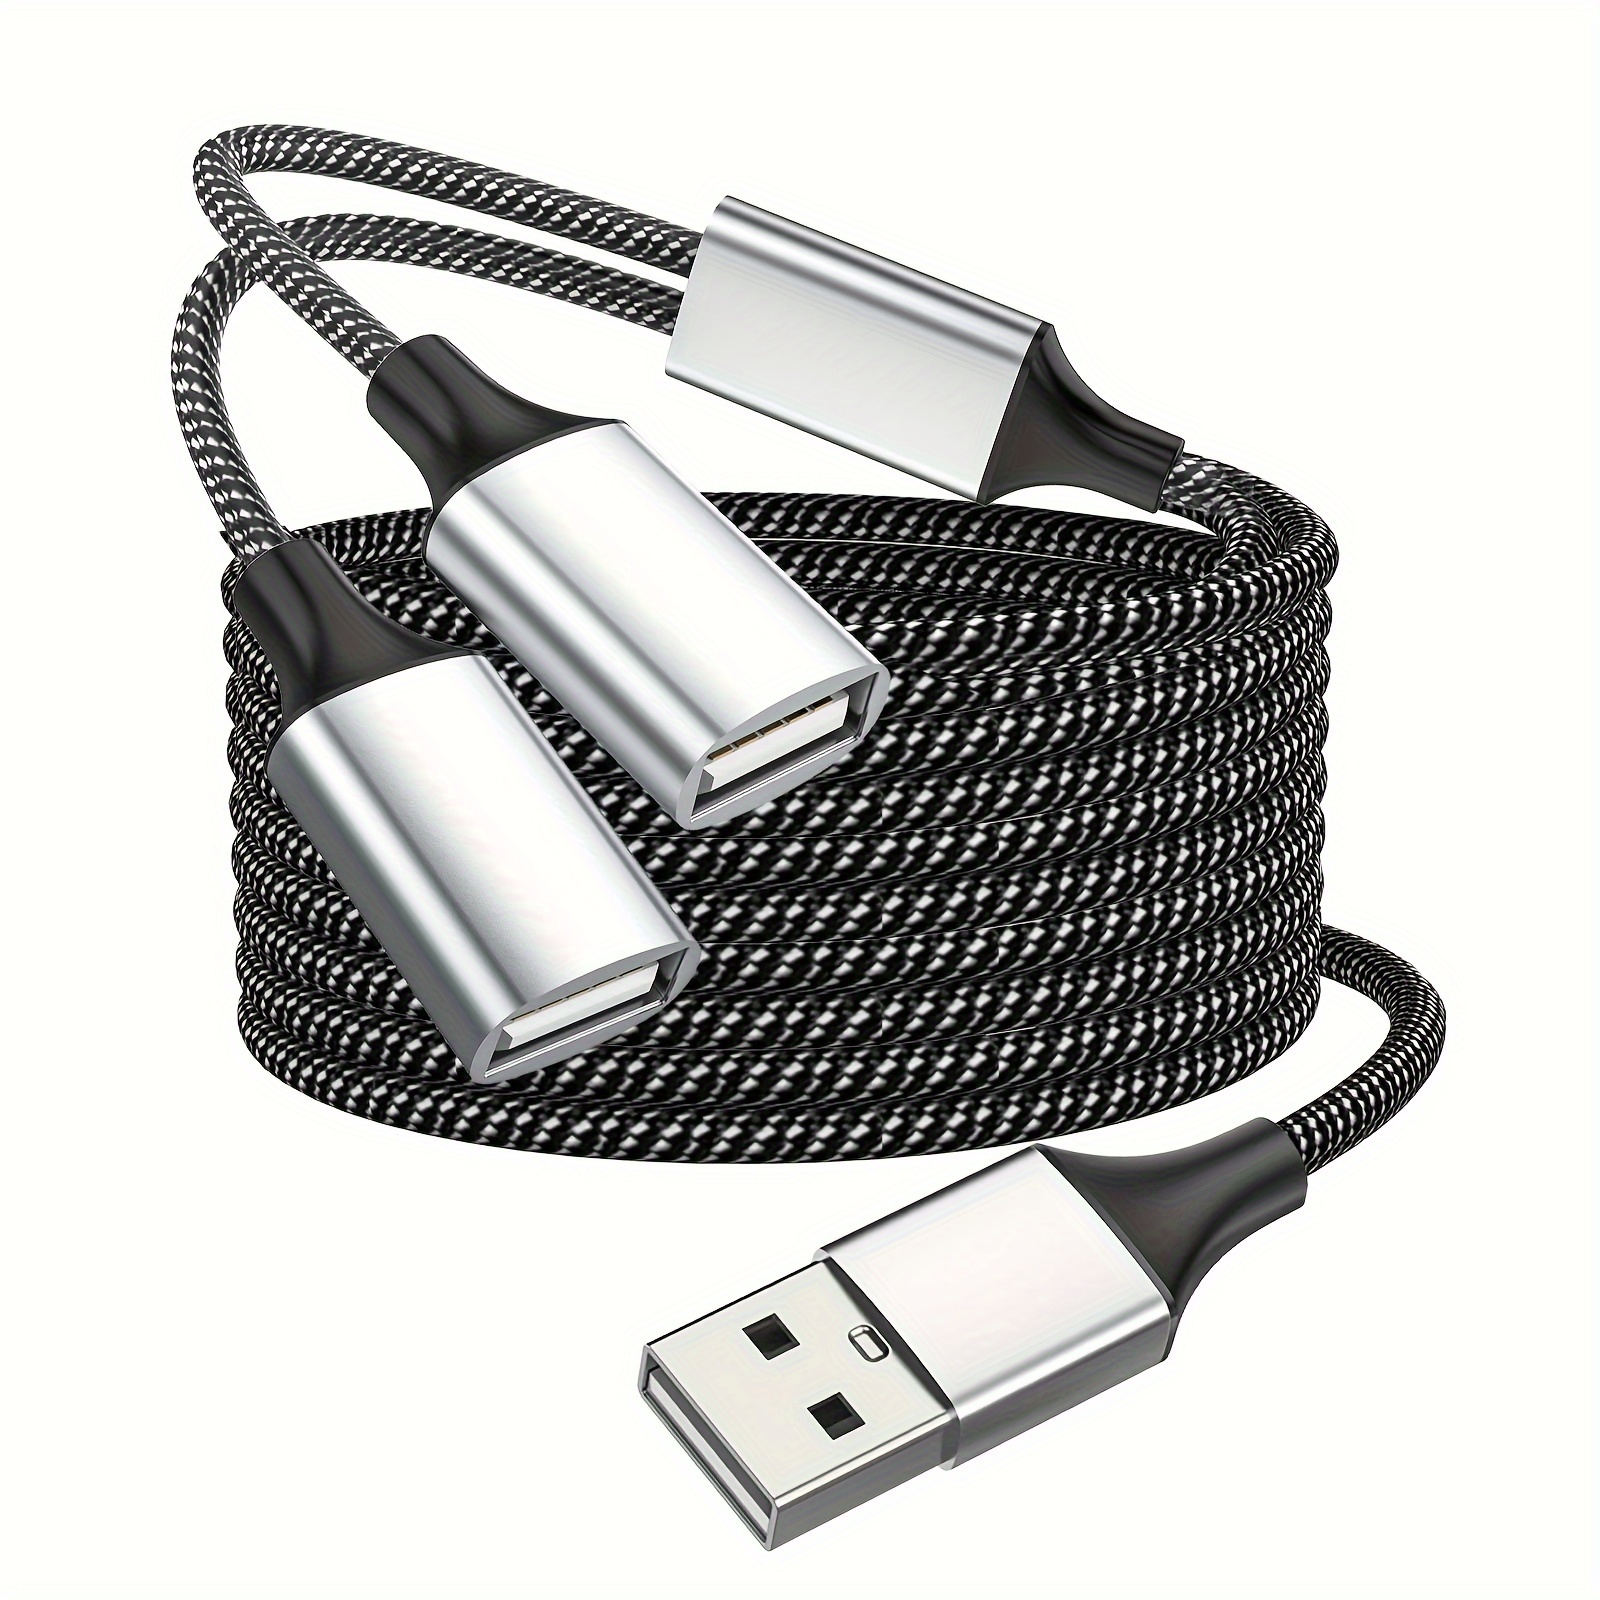 Adaptateur USB C vers USB C femelle - Câble répartiteur USB C mâle vers 2  USB-C femelles - Double port USB C - Adaptateur divisé pour Mac, Xbox One